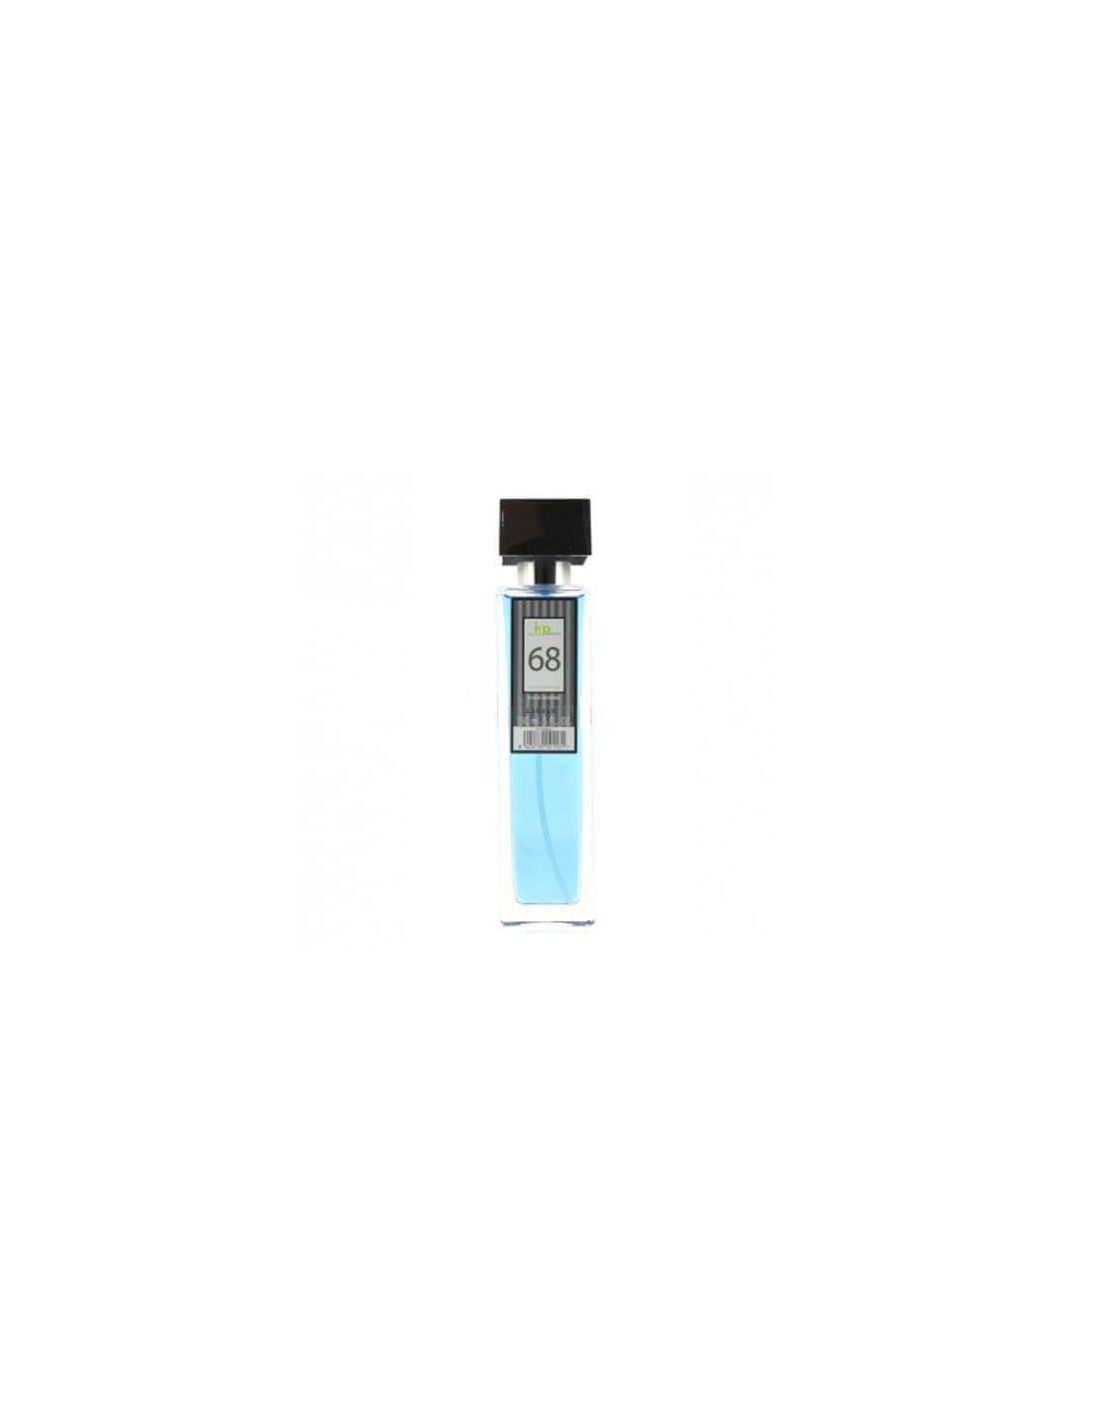 IAP Perfume N68 150ml